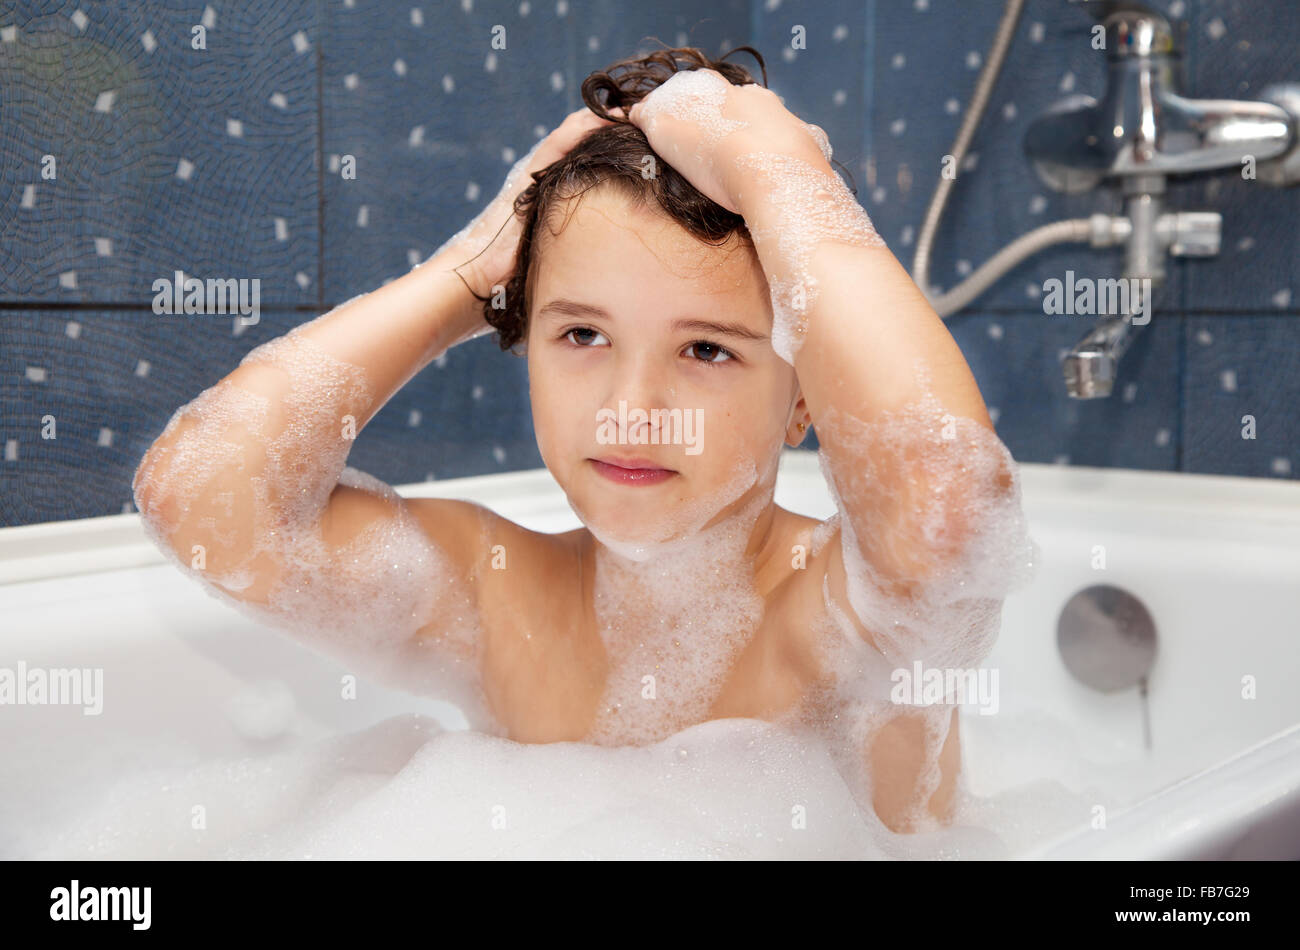 эротика голых девочек в ванной фото 110